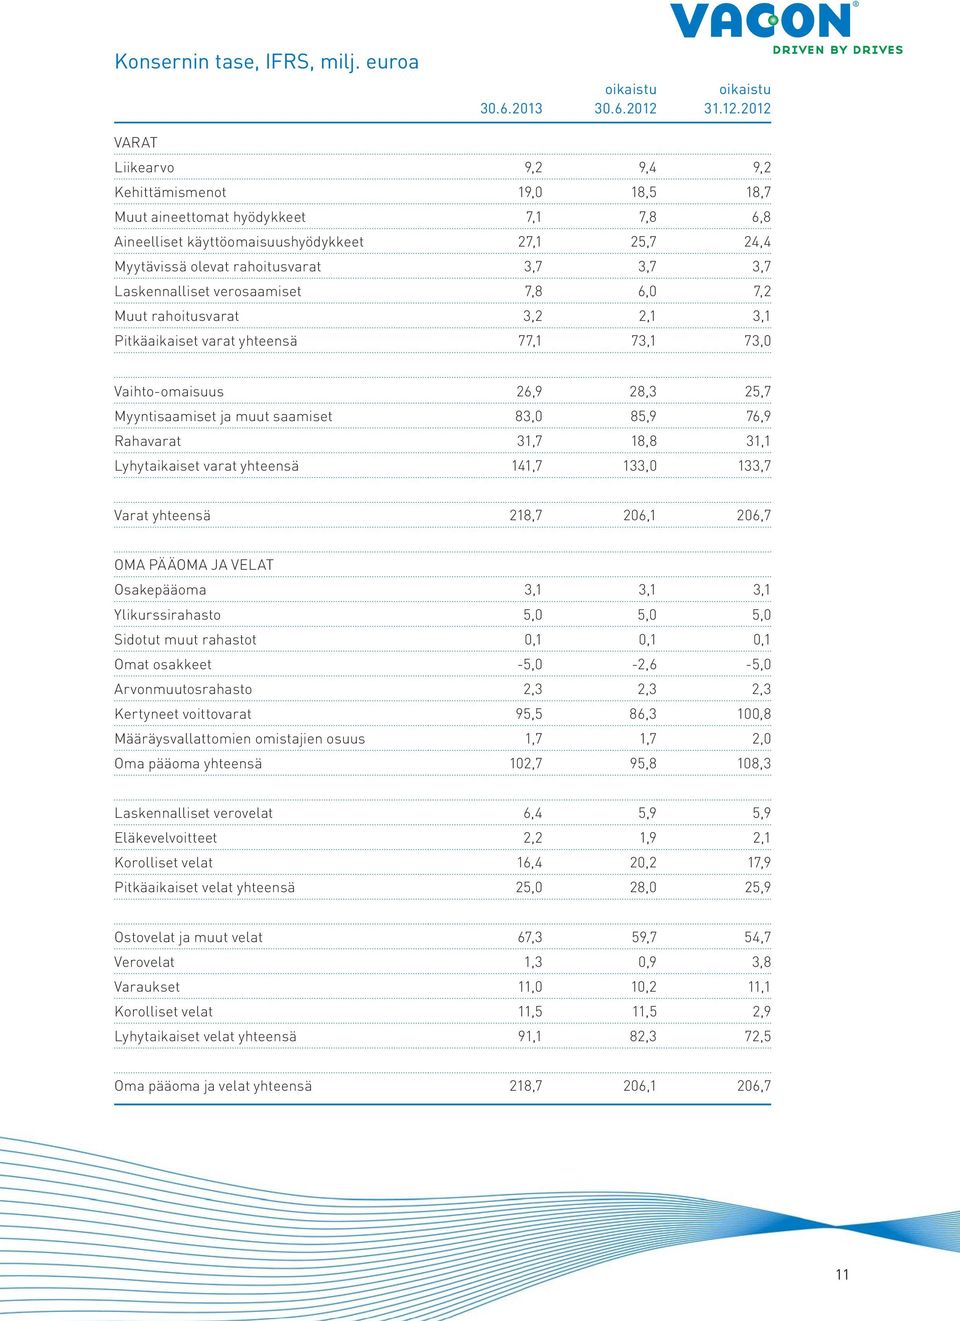 2012 VARAT Liikearvo 9,2 9,4 9,2 Kehittämismenot 19,0 18,5 18,7 Muut aineettomat hyödykkeet 7,1 7,8 6,8 Aineelliset käyttöomaisuushyödykkeet 27,1 25,7 24,4 Myytävissä olevat rahoitusvarat 3,7 3,7 3,7